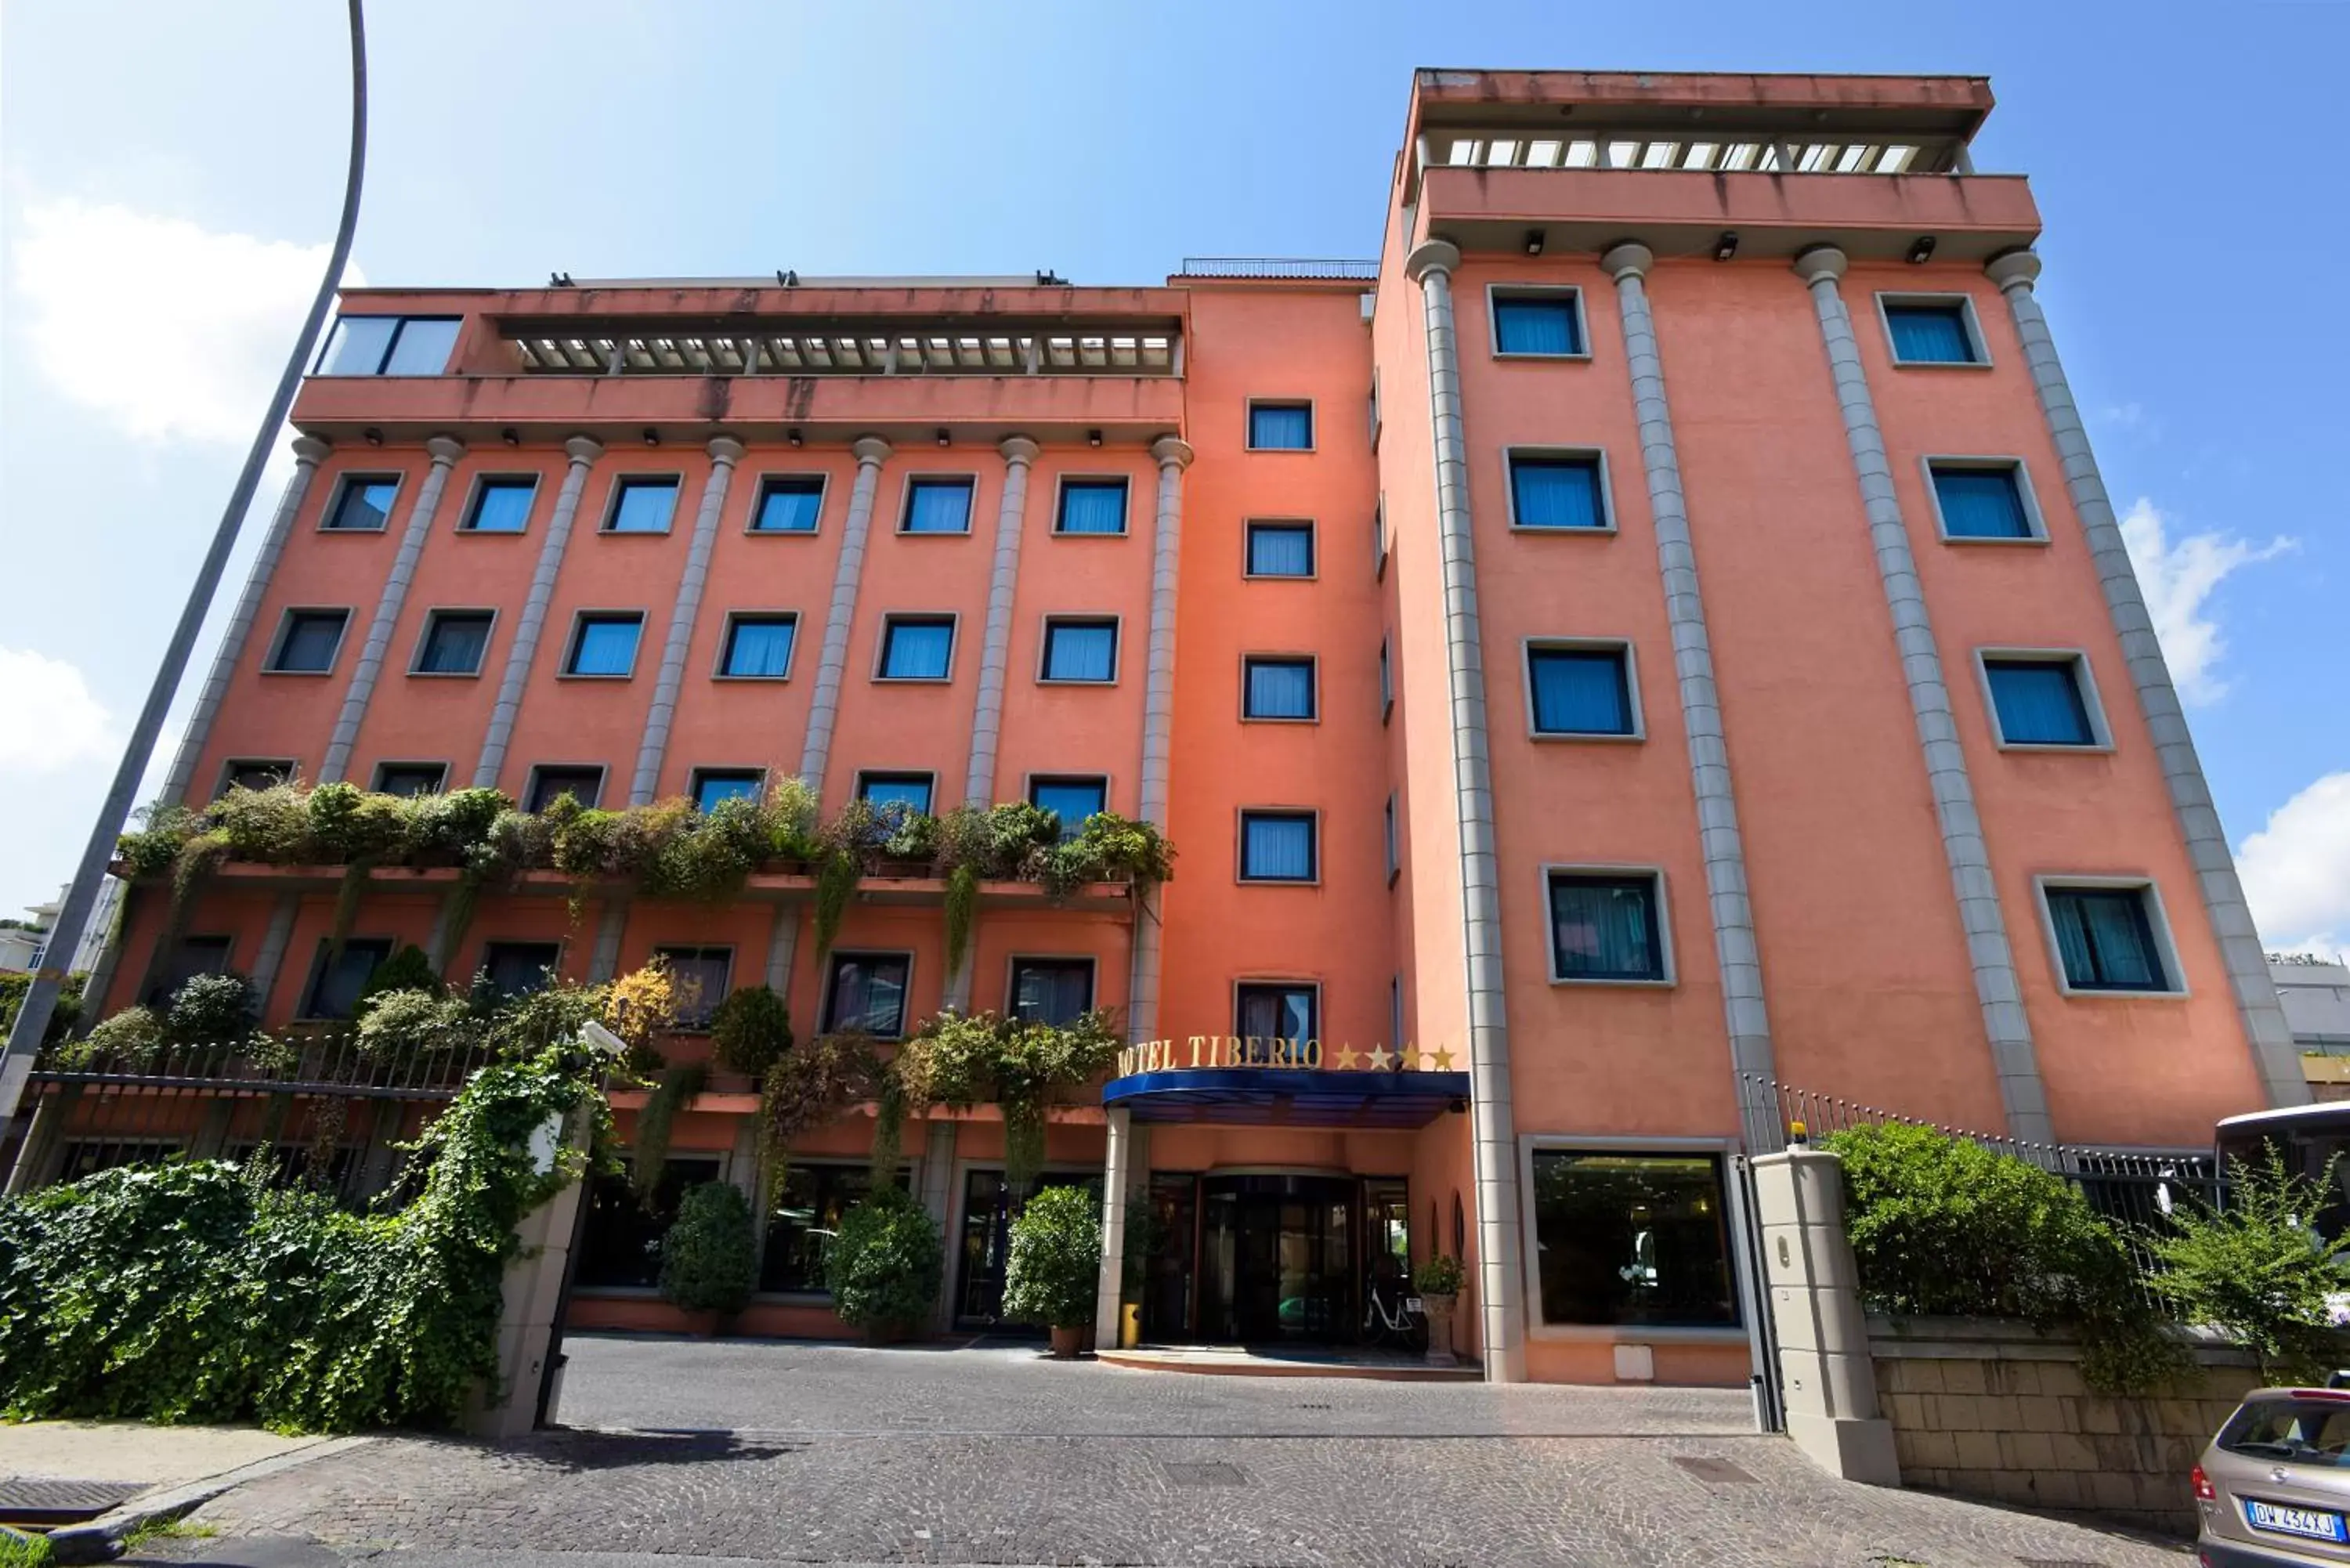 Facade/entrance in Grand Hotel Tiberio